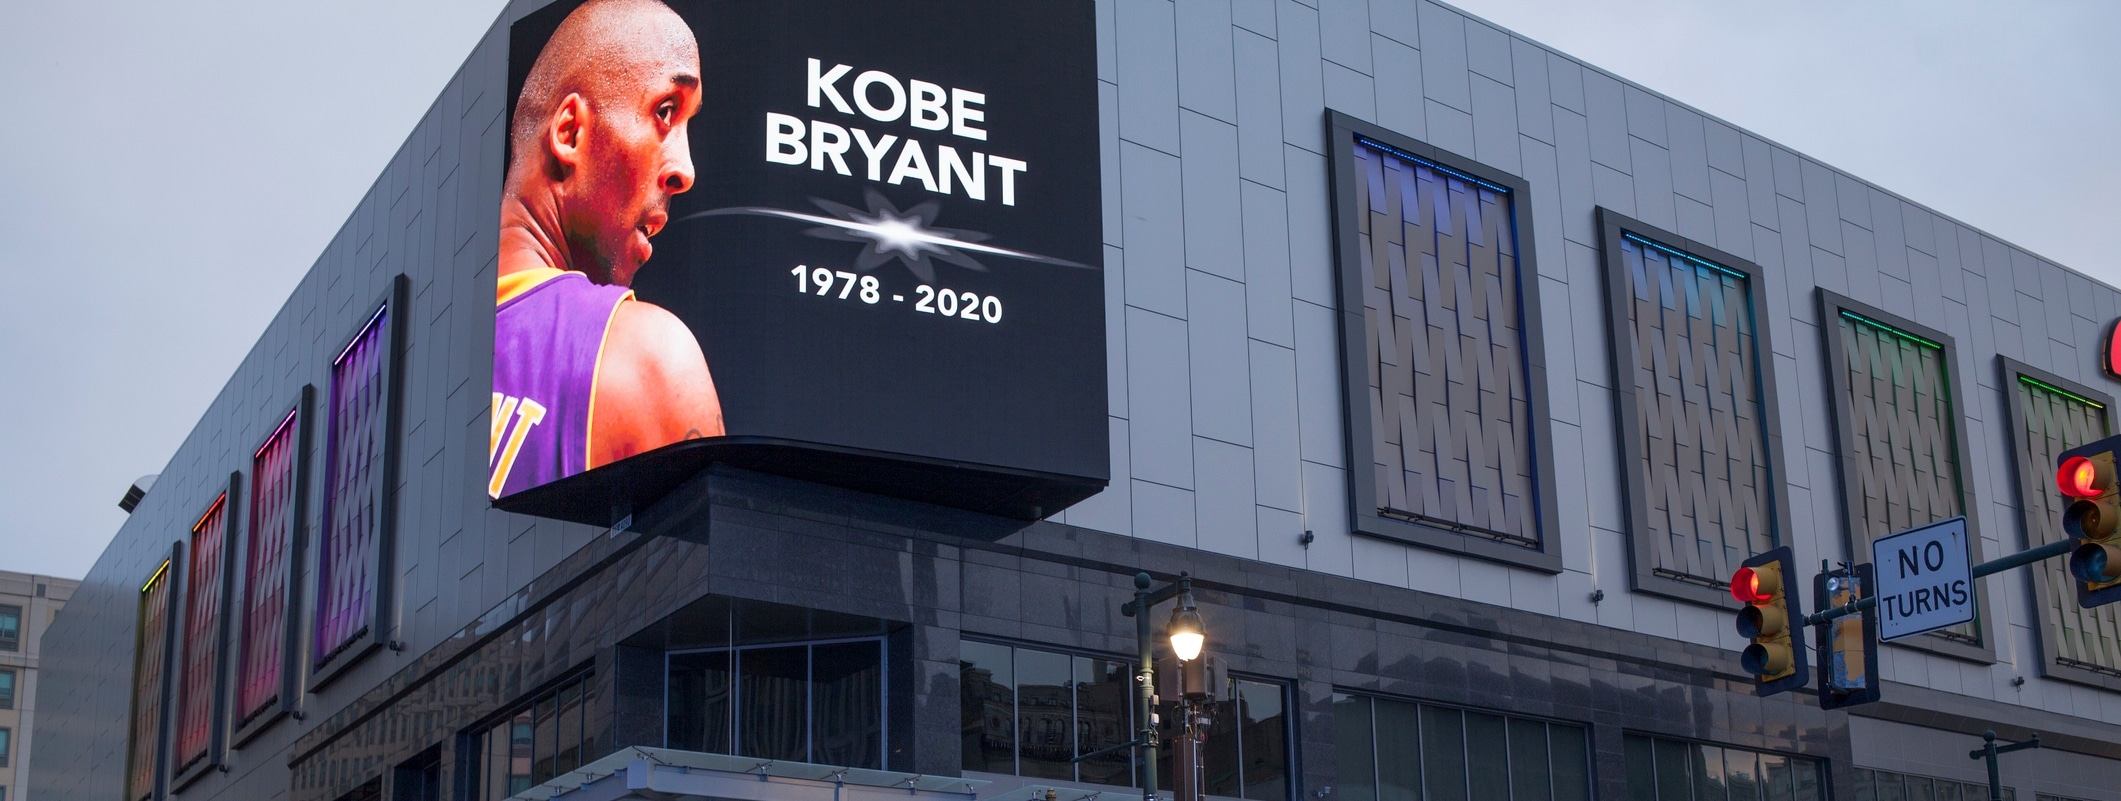 ¿Cómo aplicar la mentalidad Mamba de Kobe Bryant a los negocios?